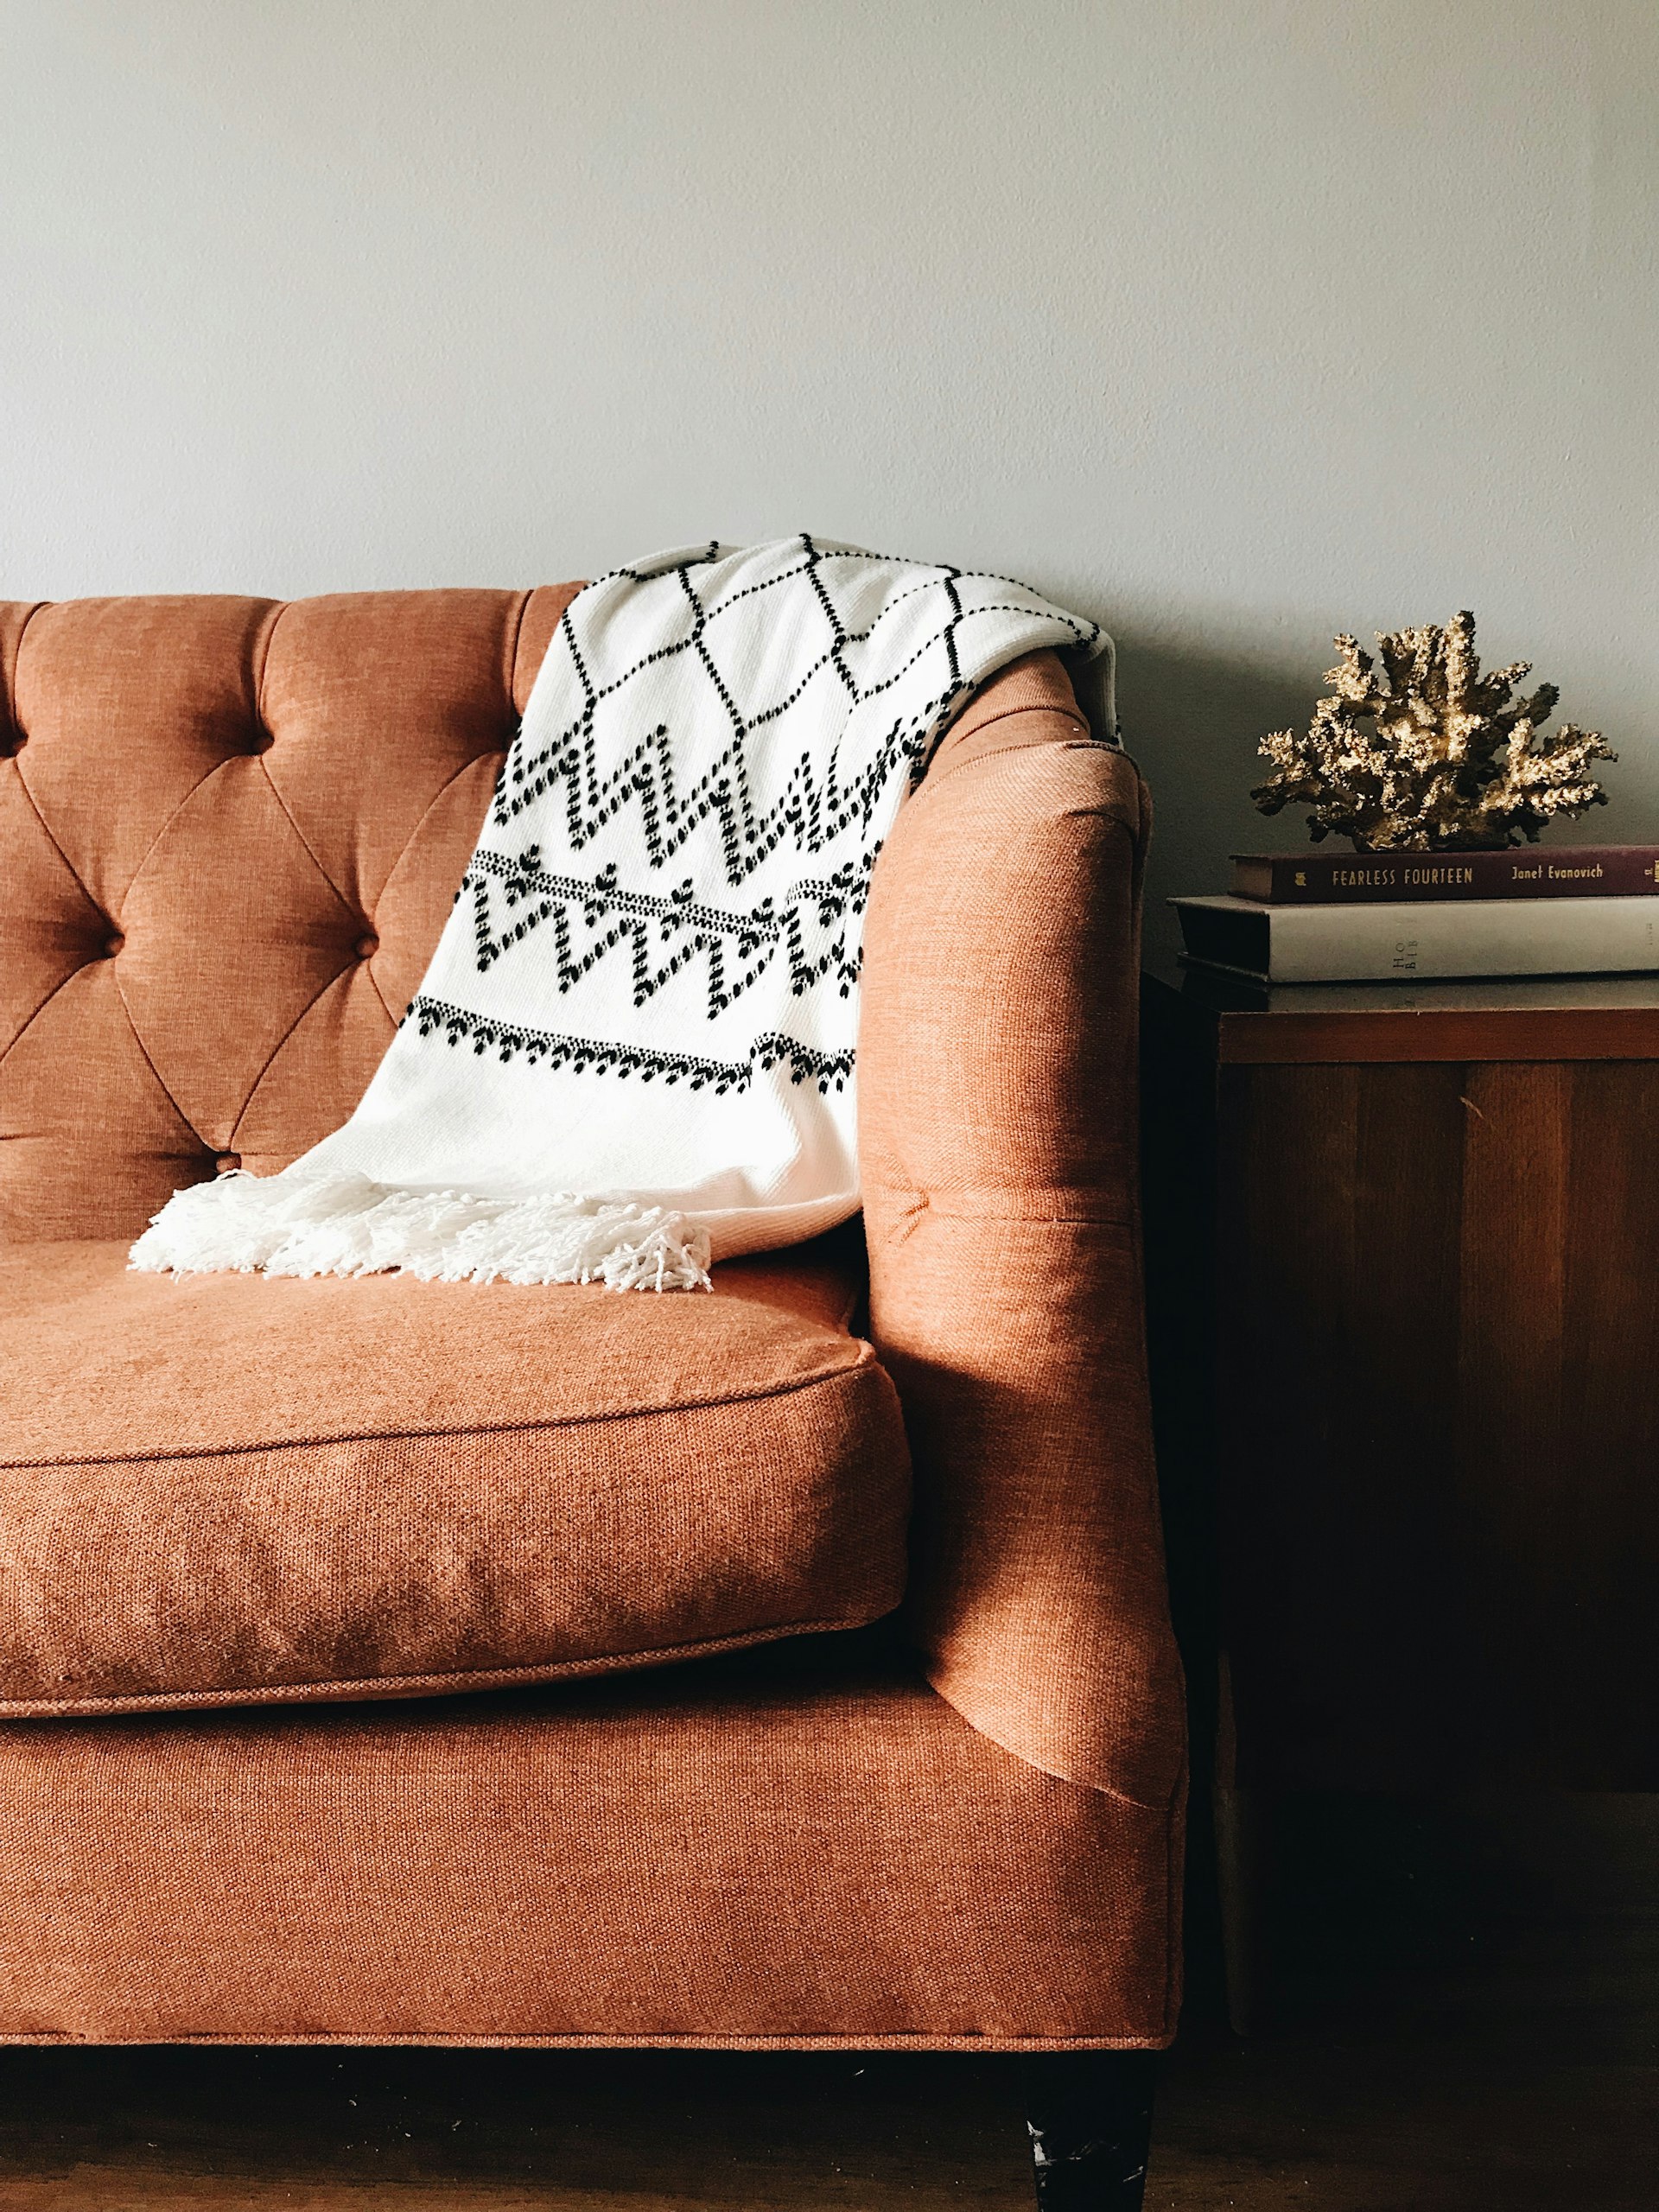 De beste textielreiniging: tips voor een fris interieur